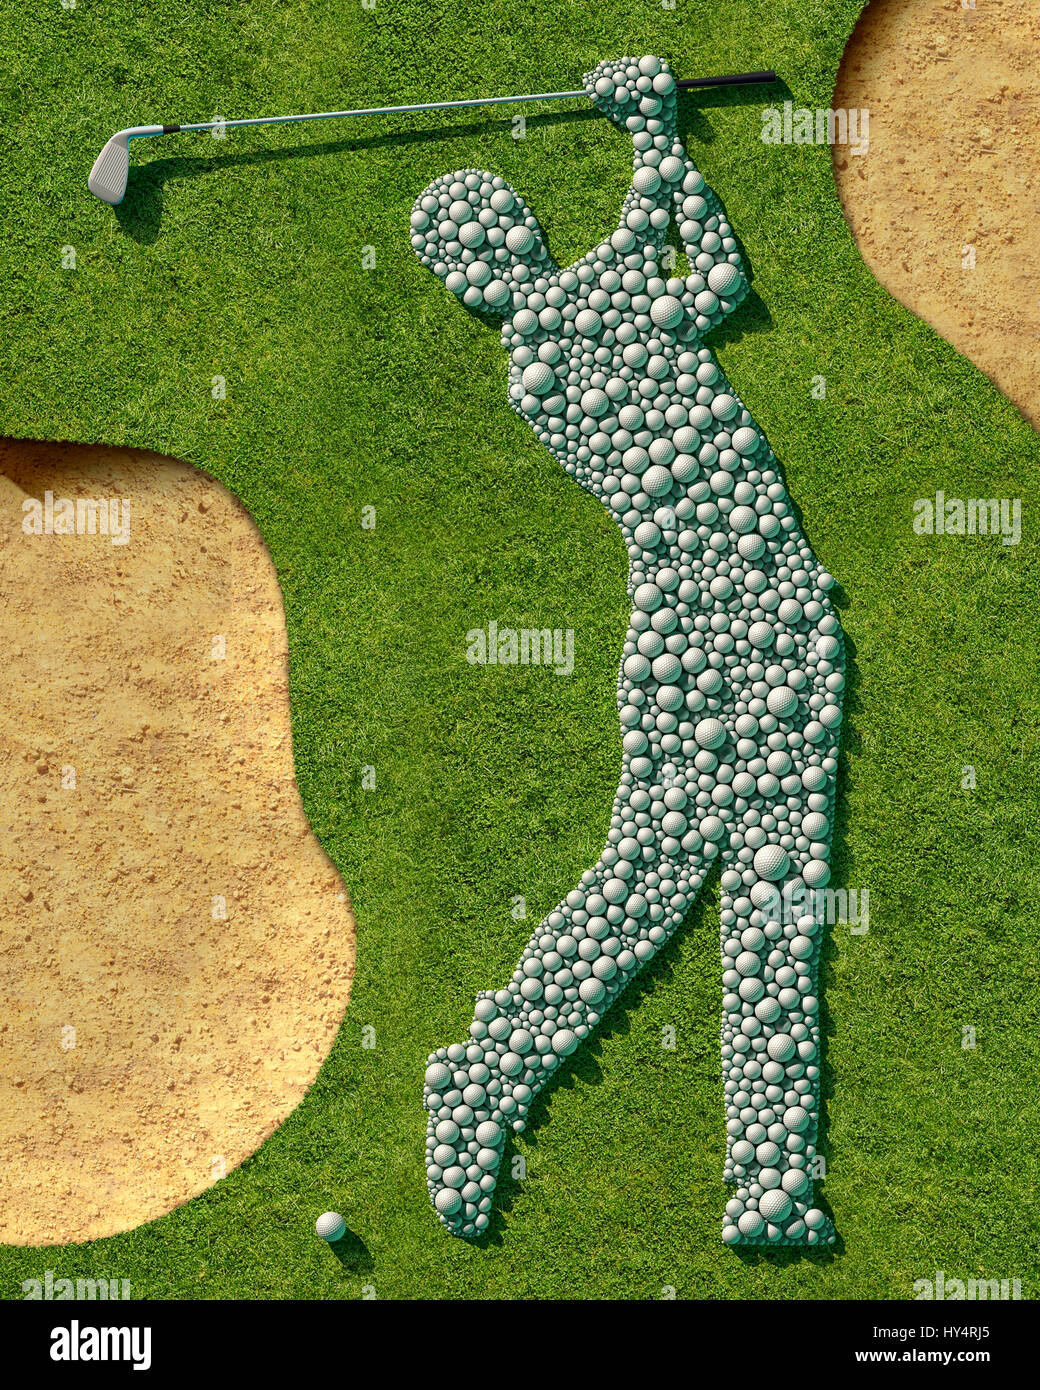 Golf course, grass, bunker, Detail, Symbol, golfer, balls, golf balls, golf clubs, Stock Photo